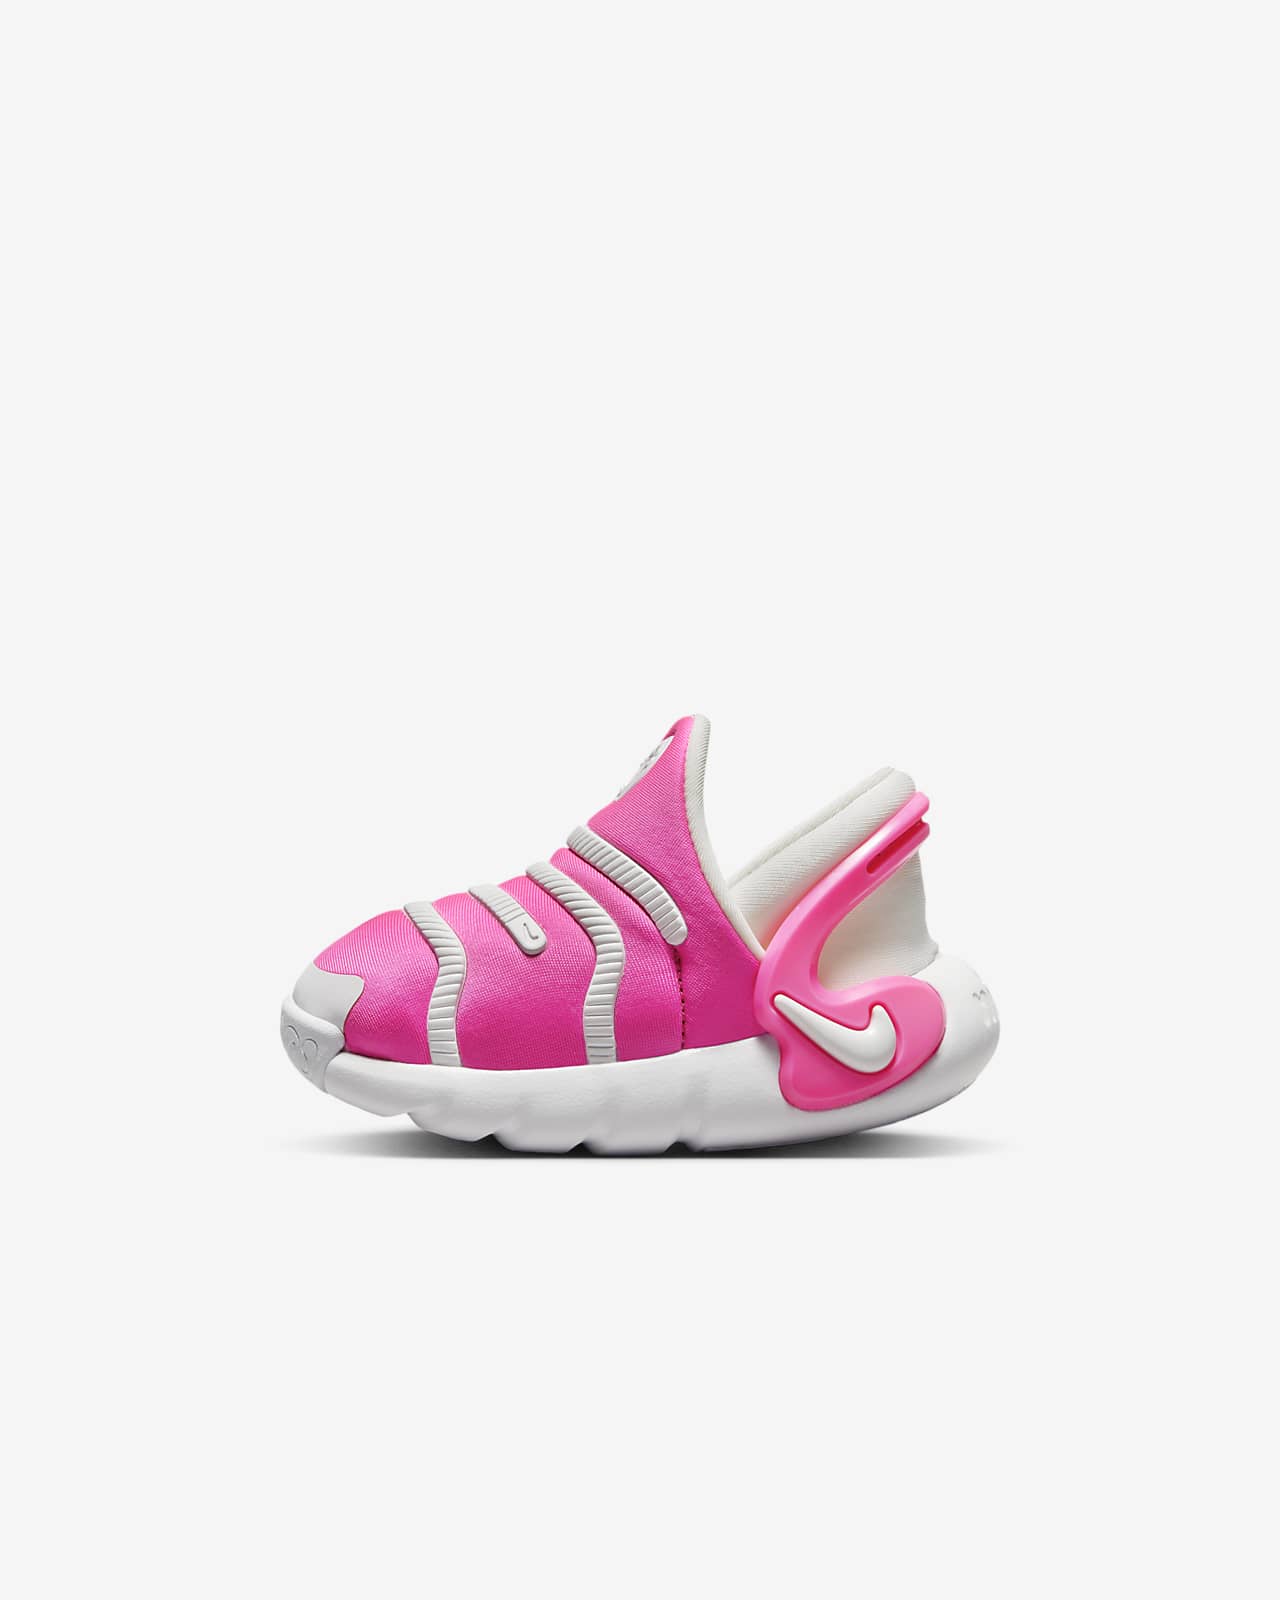 Nike Dynamo 2 EasyOn Baby/Toddler Shoes